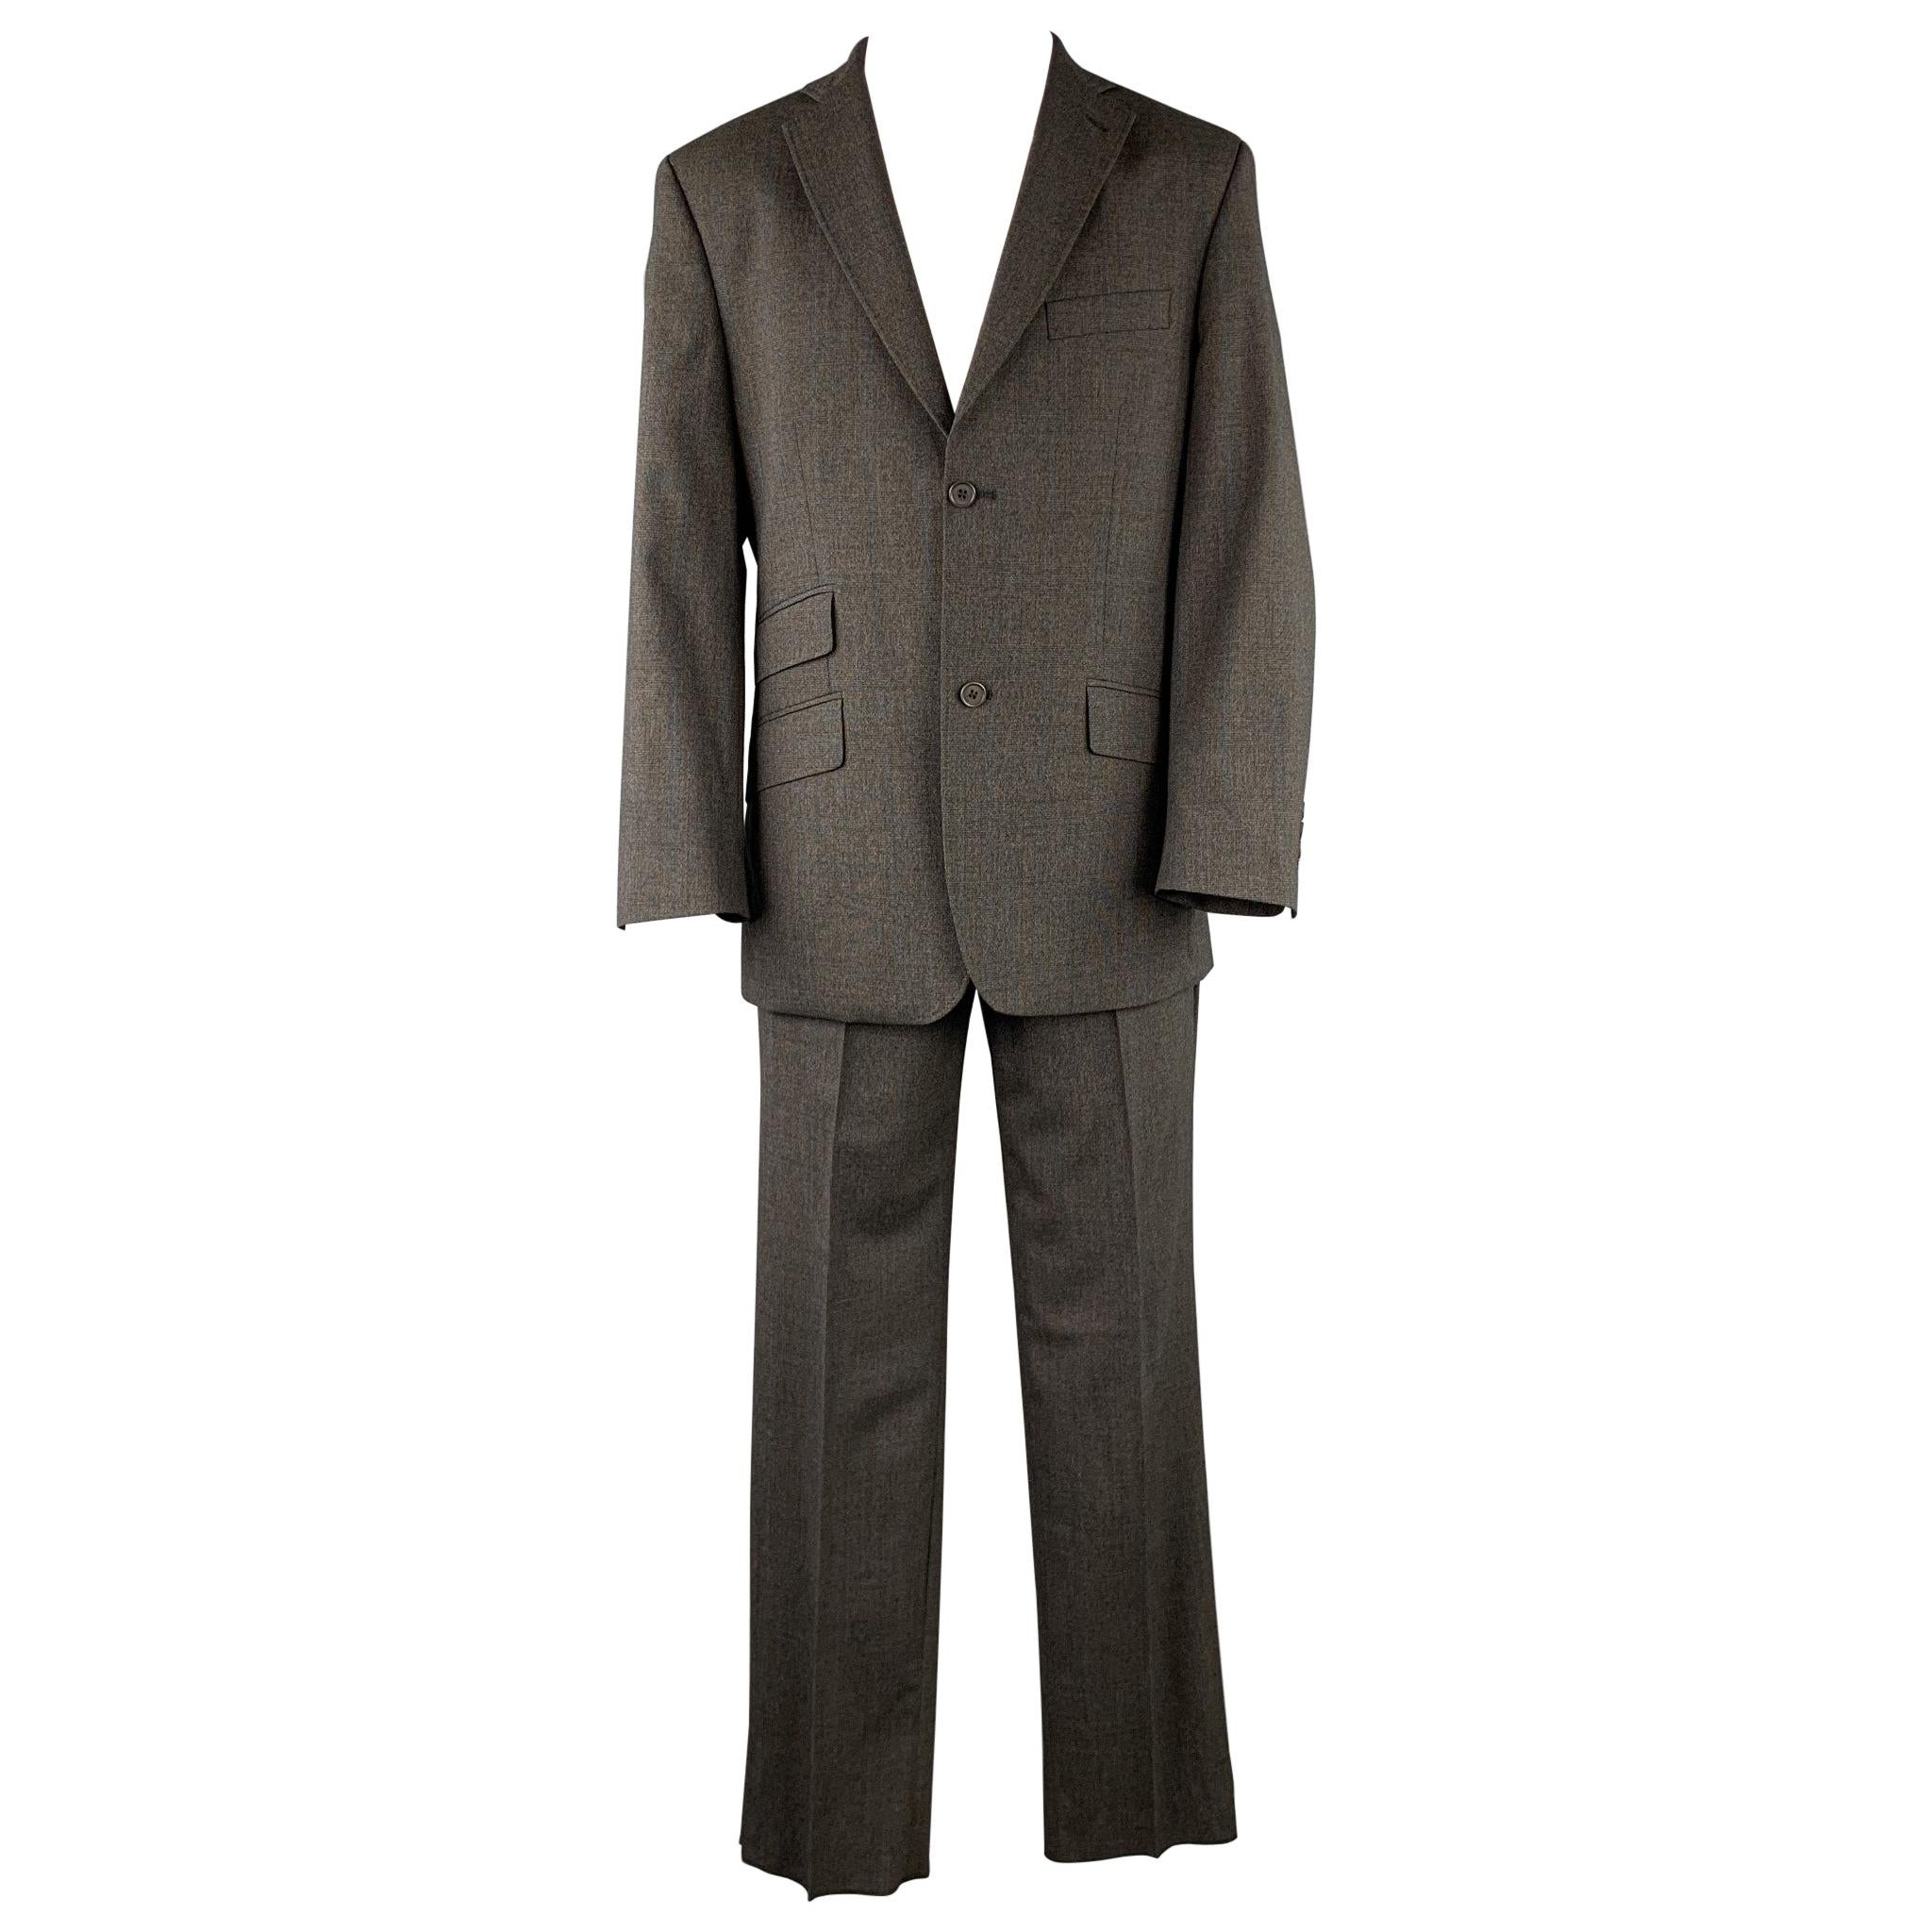 TED BAKER Size 40 Short Charcoal Glenplaid Wool Blend Notch Lapel Suit